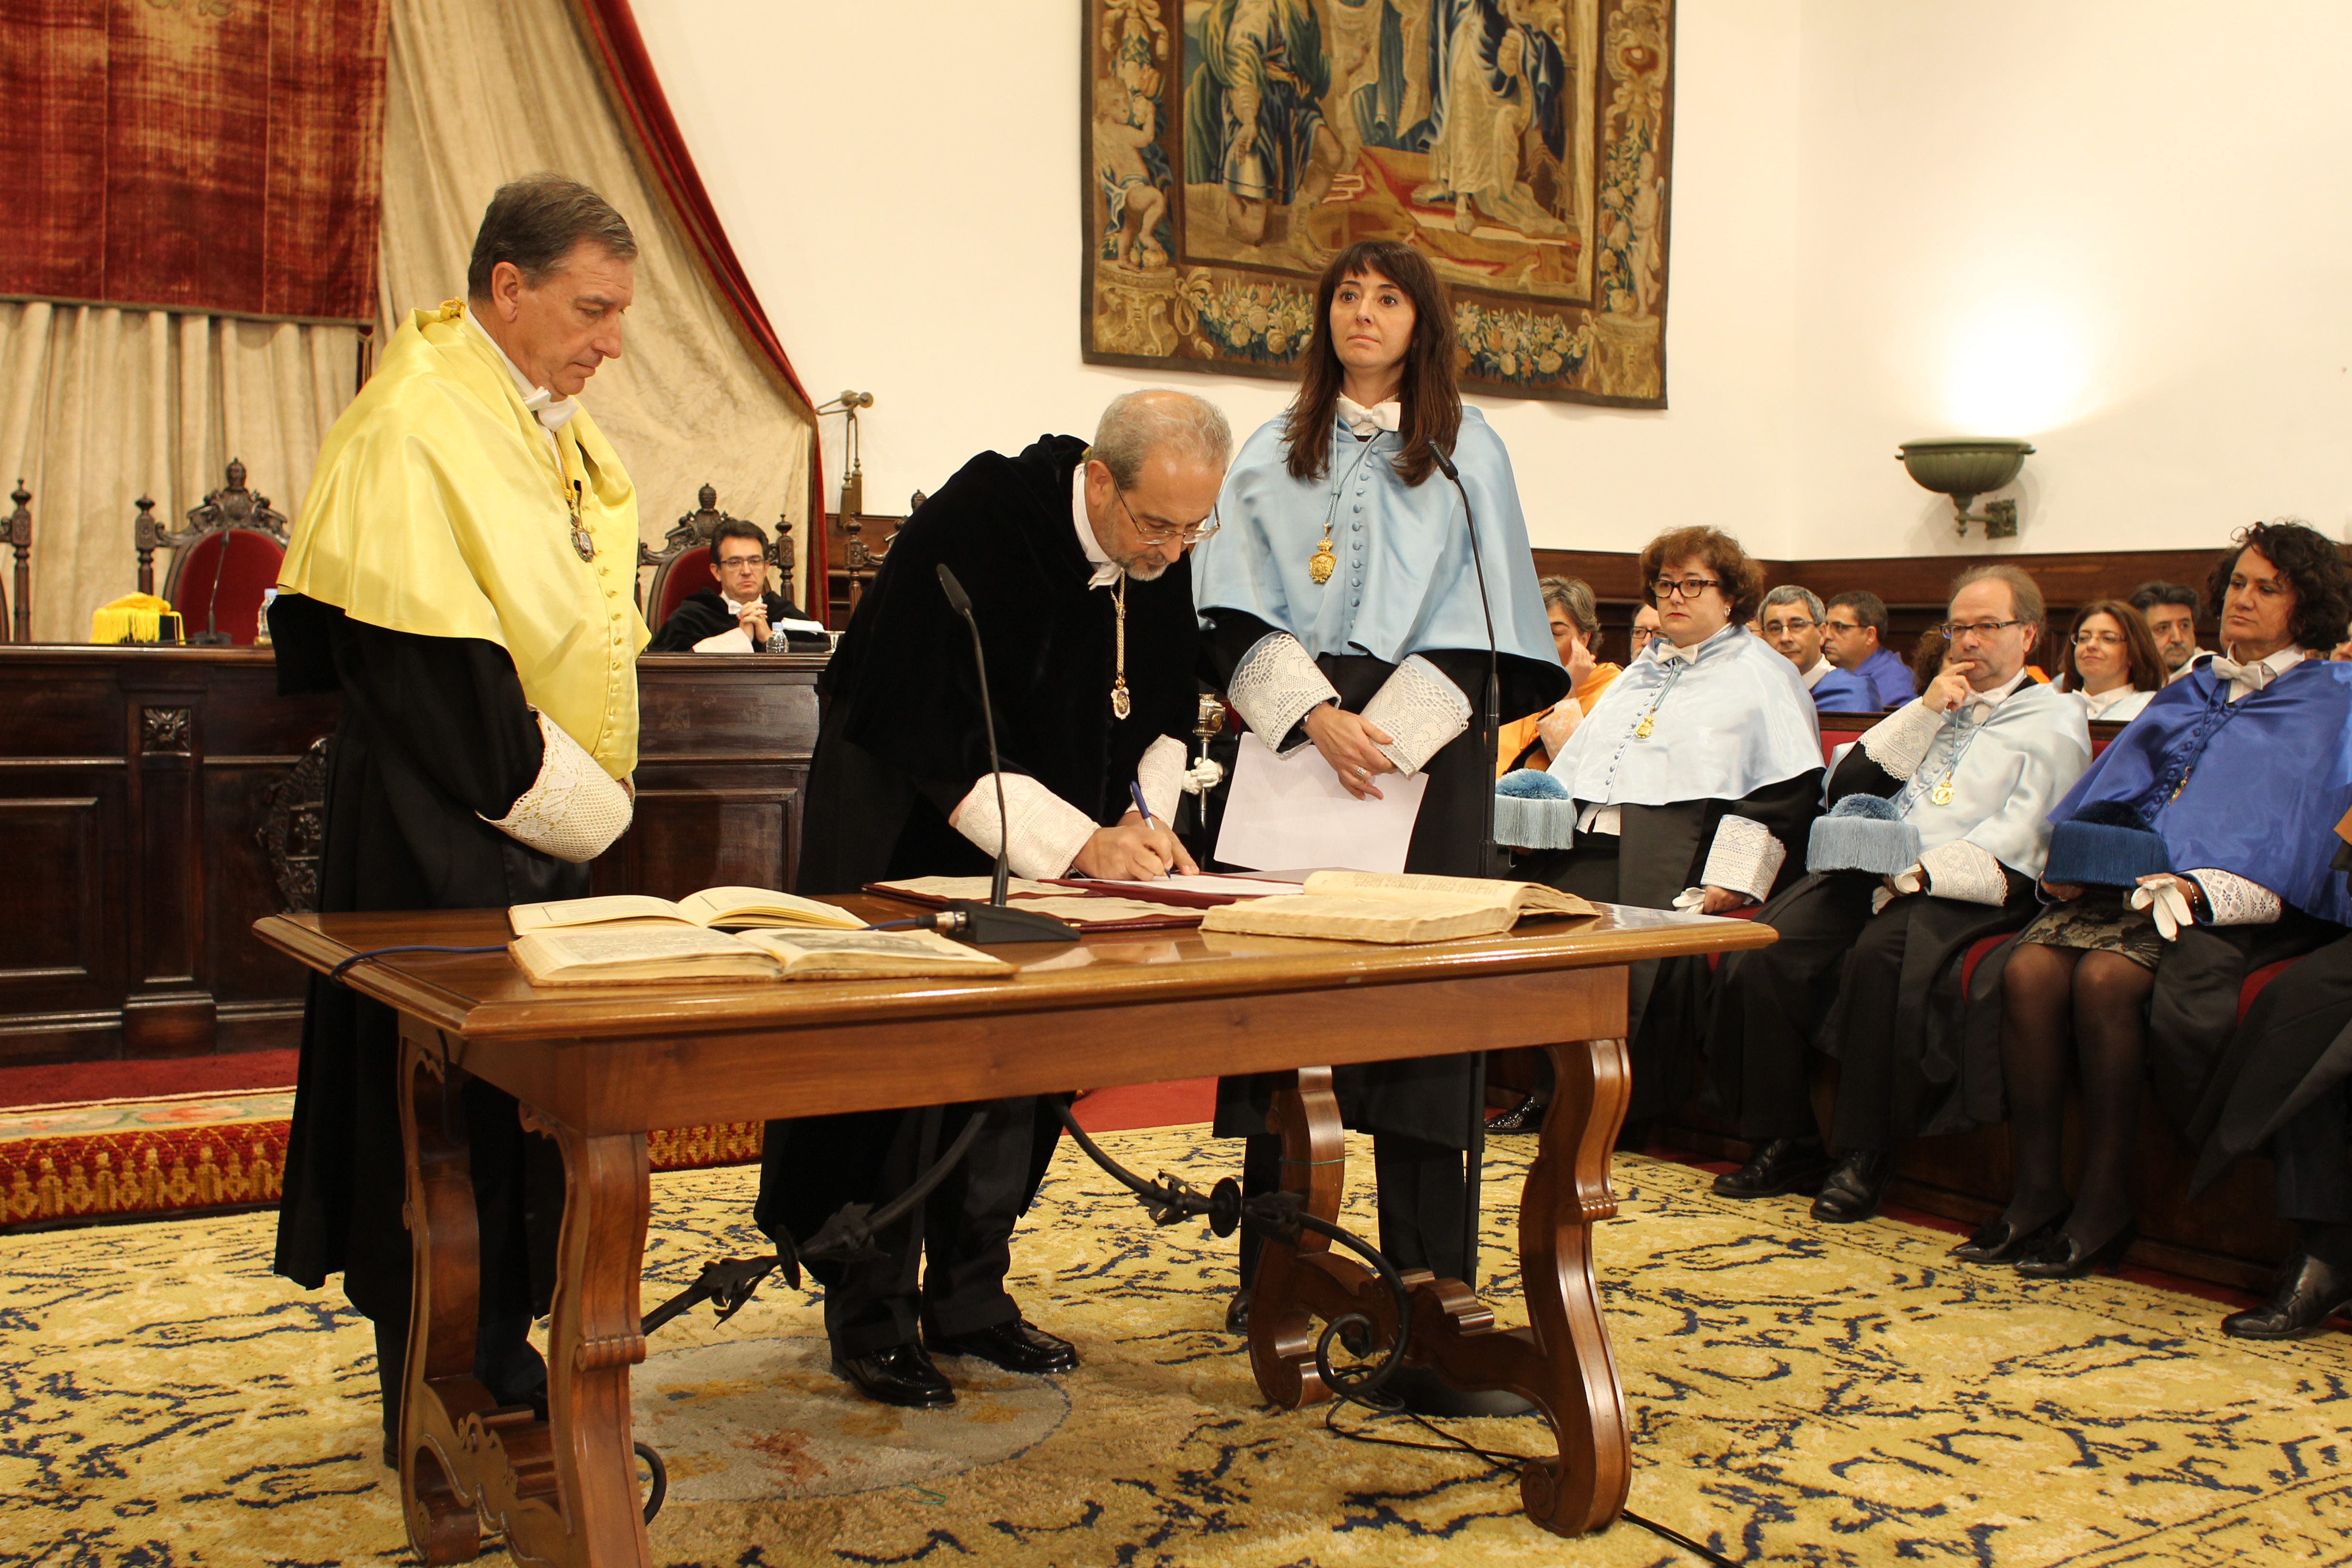 El catedrático Daniel Hernández Ruipérez toma posesión como Rector de la Universidad de Salamanca en su segundo mandato